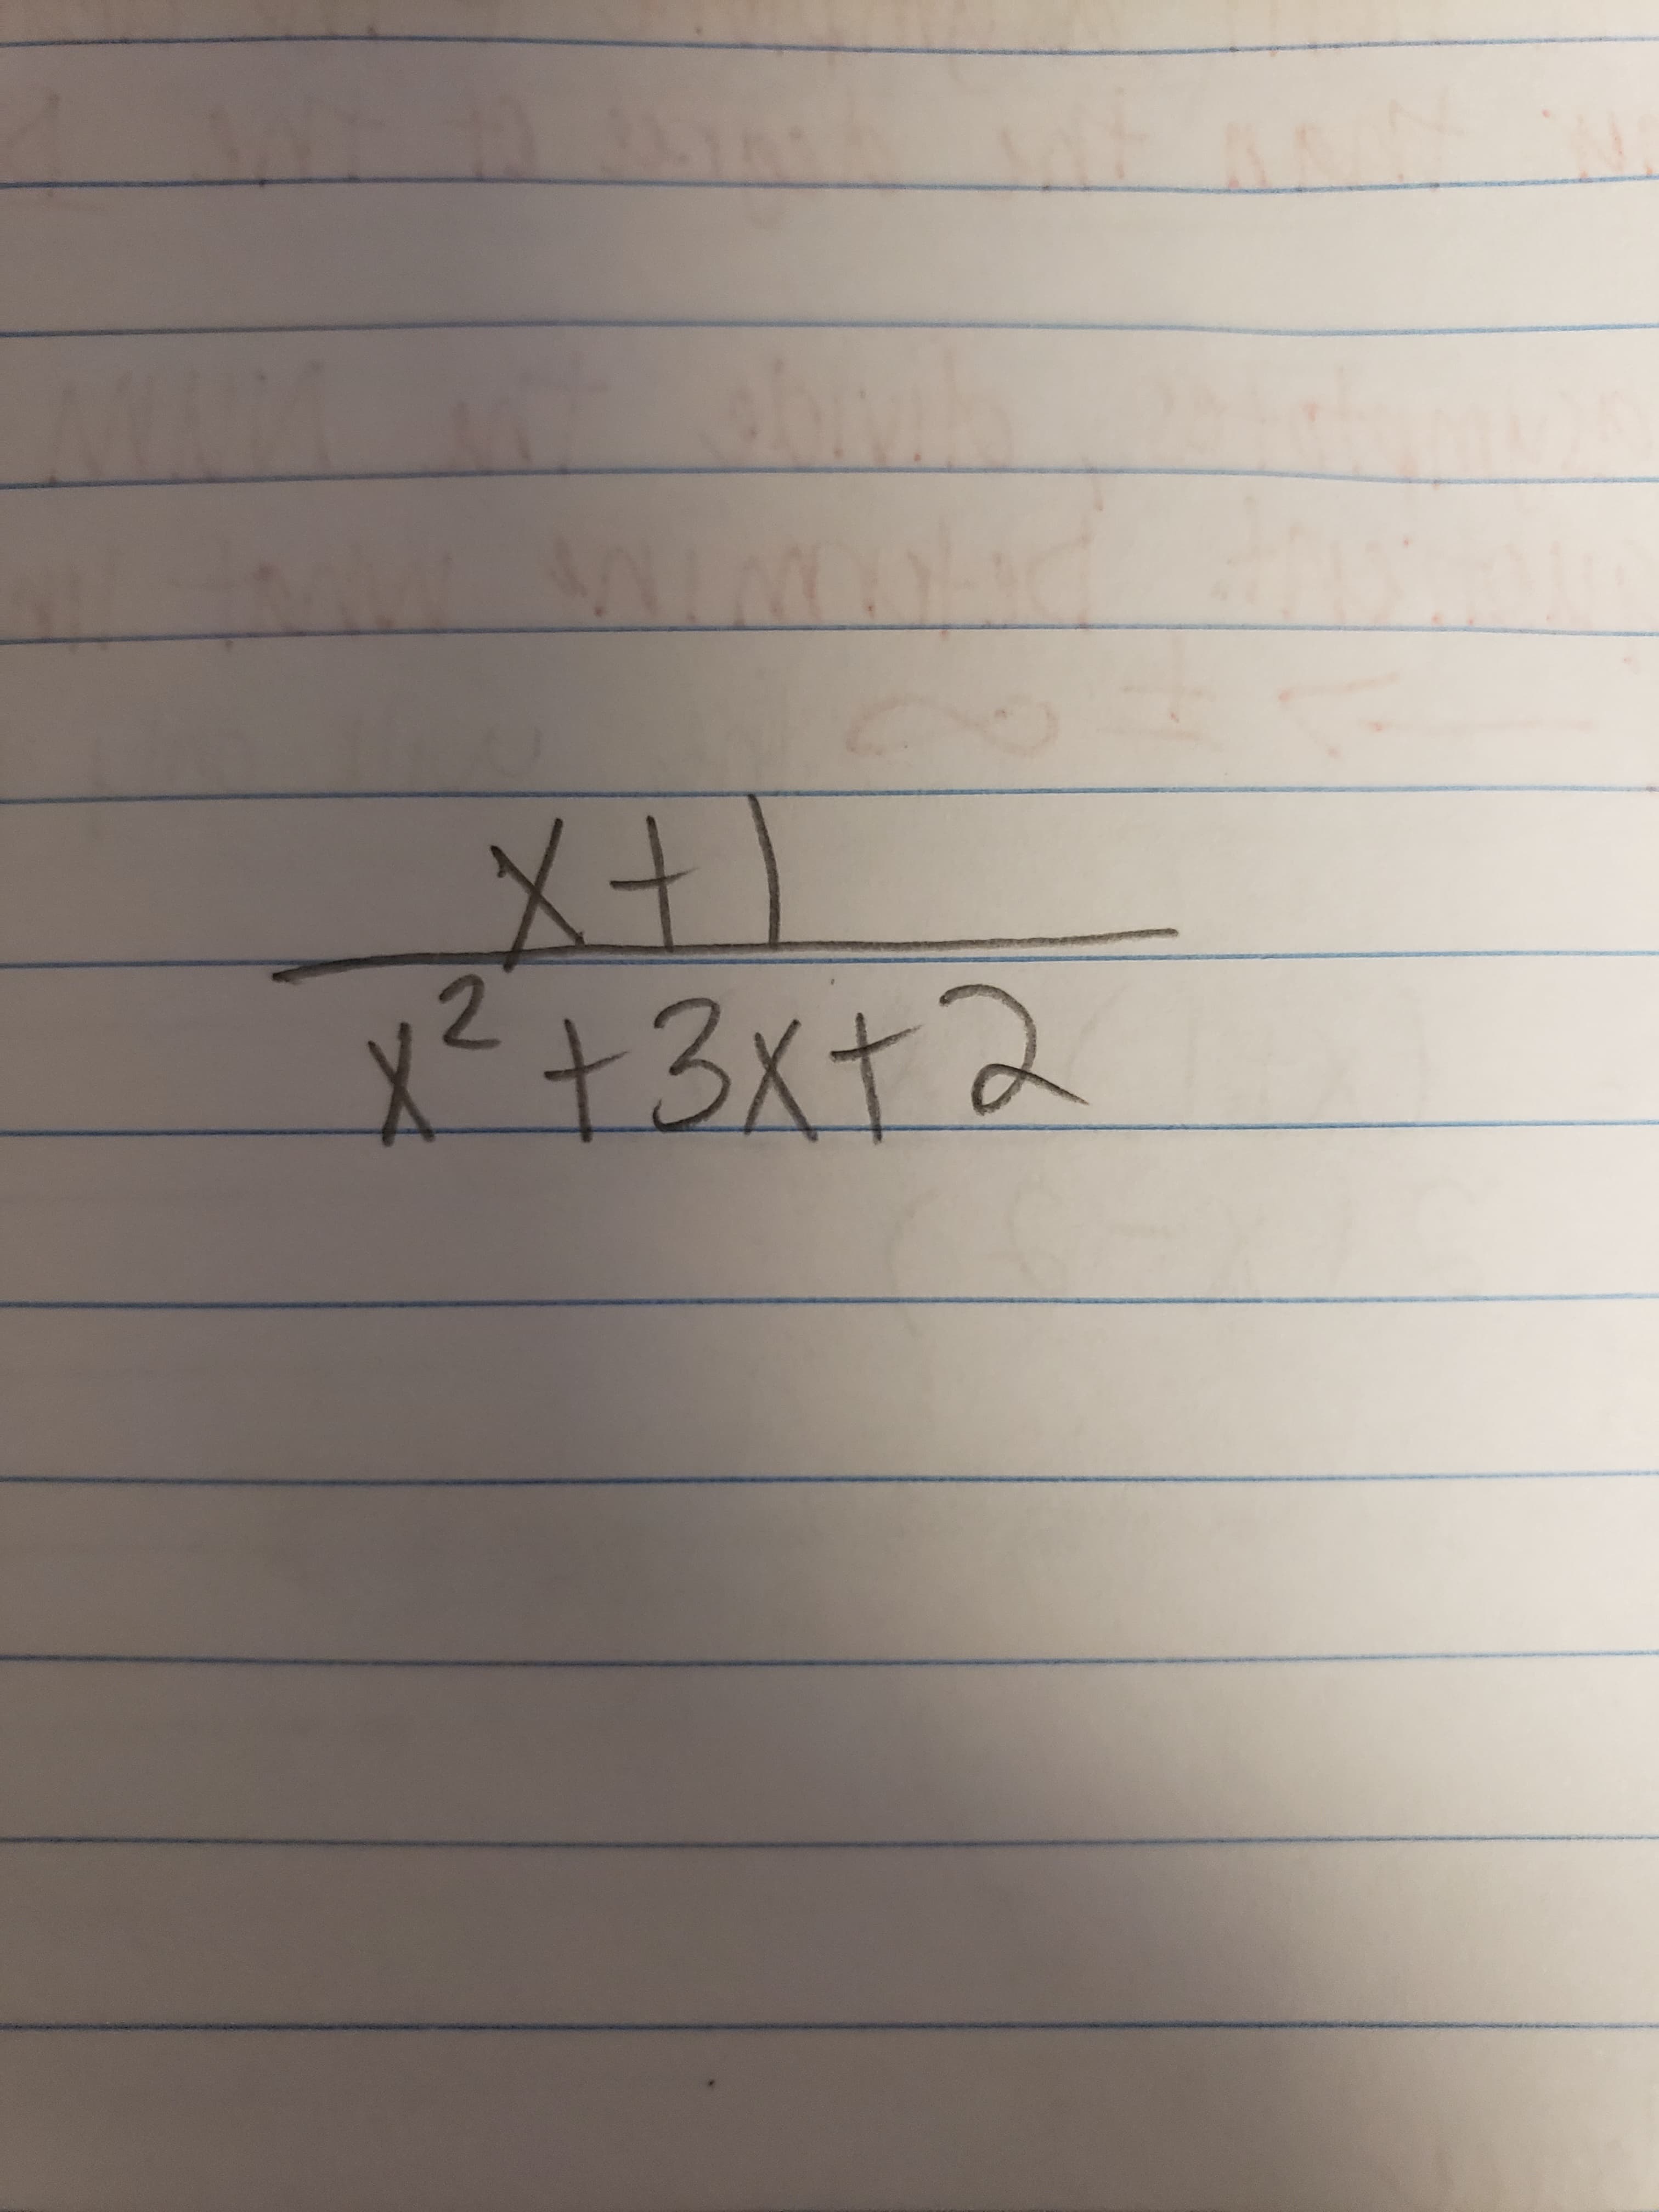 メナ)
x²+3x+2
